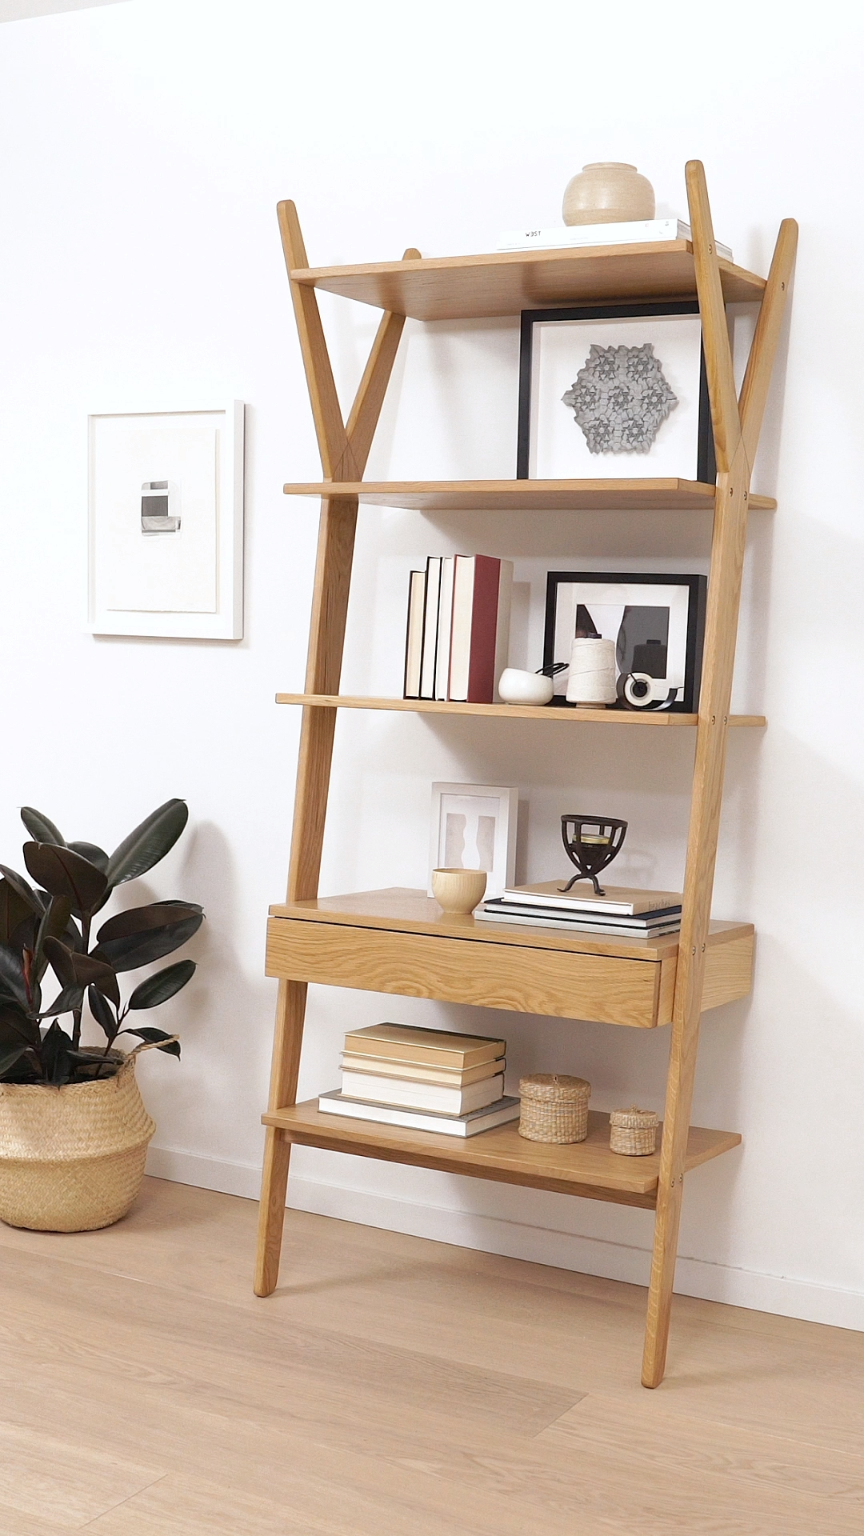 Lignum Oak Shelving Unit - Lignum Oak Shelving Unit -   19 diy Bookshelf corner ideas